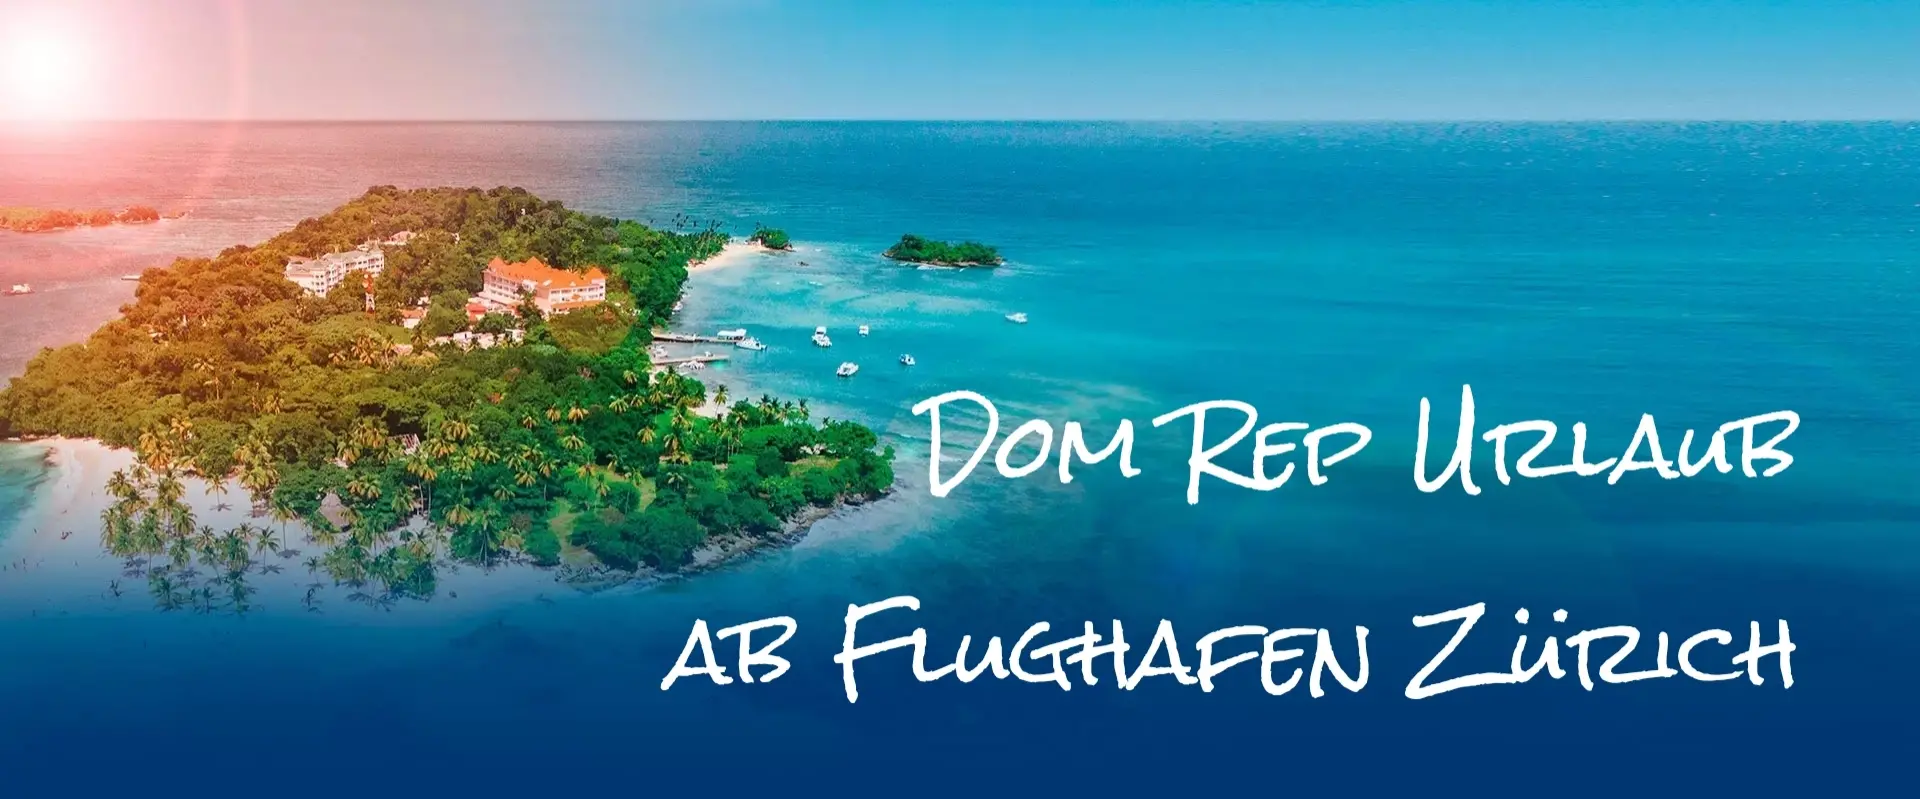 Dom Rep Urlaub ab Flughafen Zürich in die Dominikanische Republik